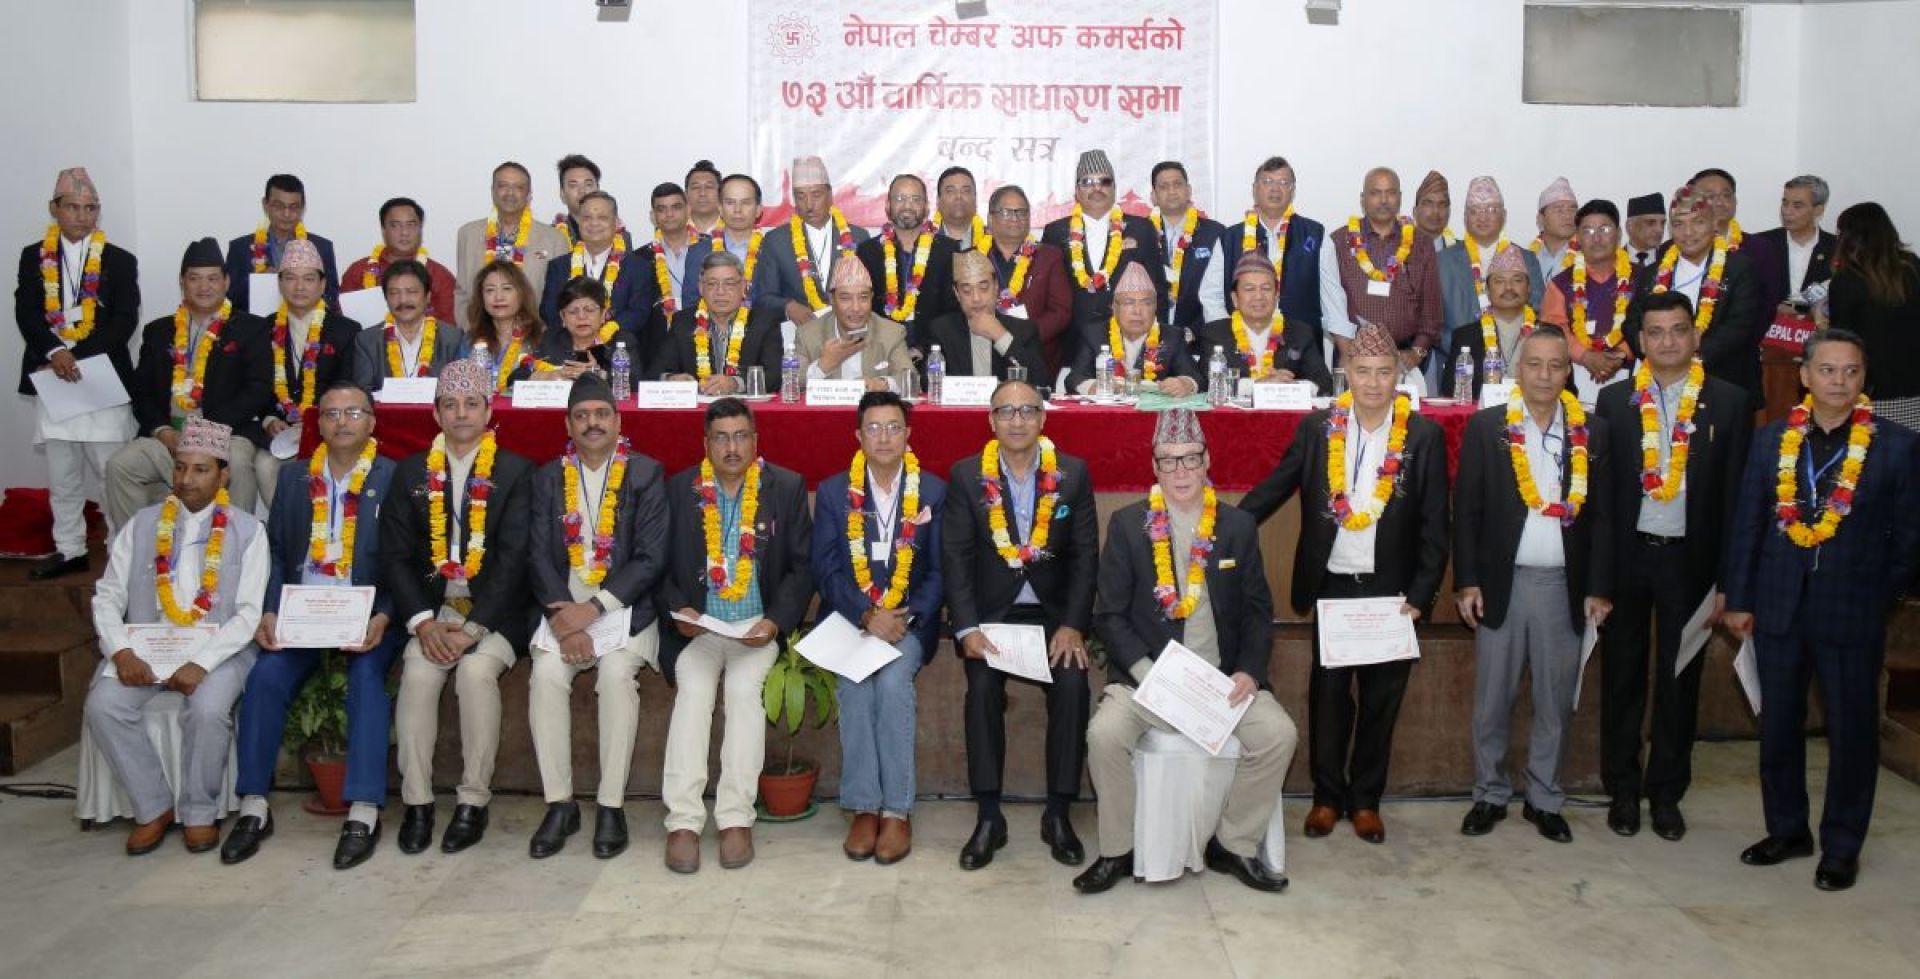 नेपाल चेम्बर अफ कमर्सको अध्यक्षमा अग्रवाल निर्विरोध,वरिष्ठ उपाध्यक्षमा मल्होत्रा